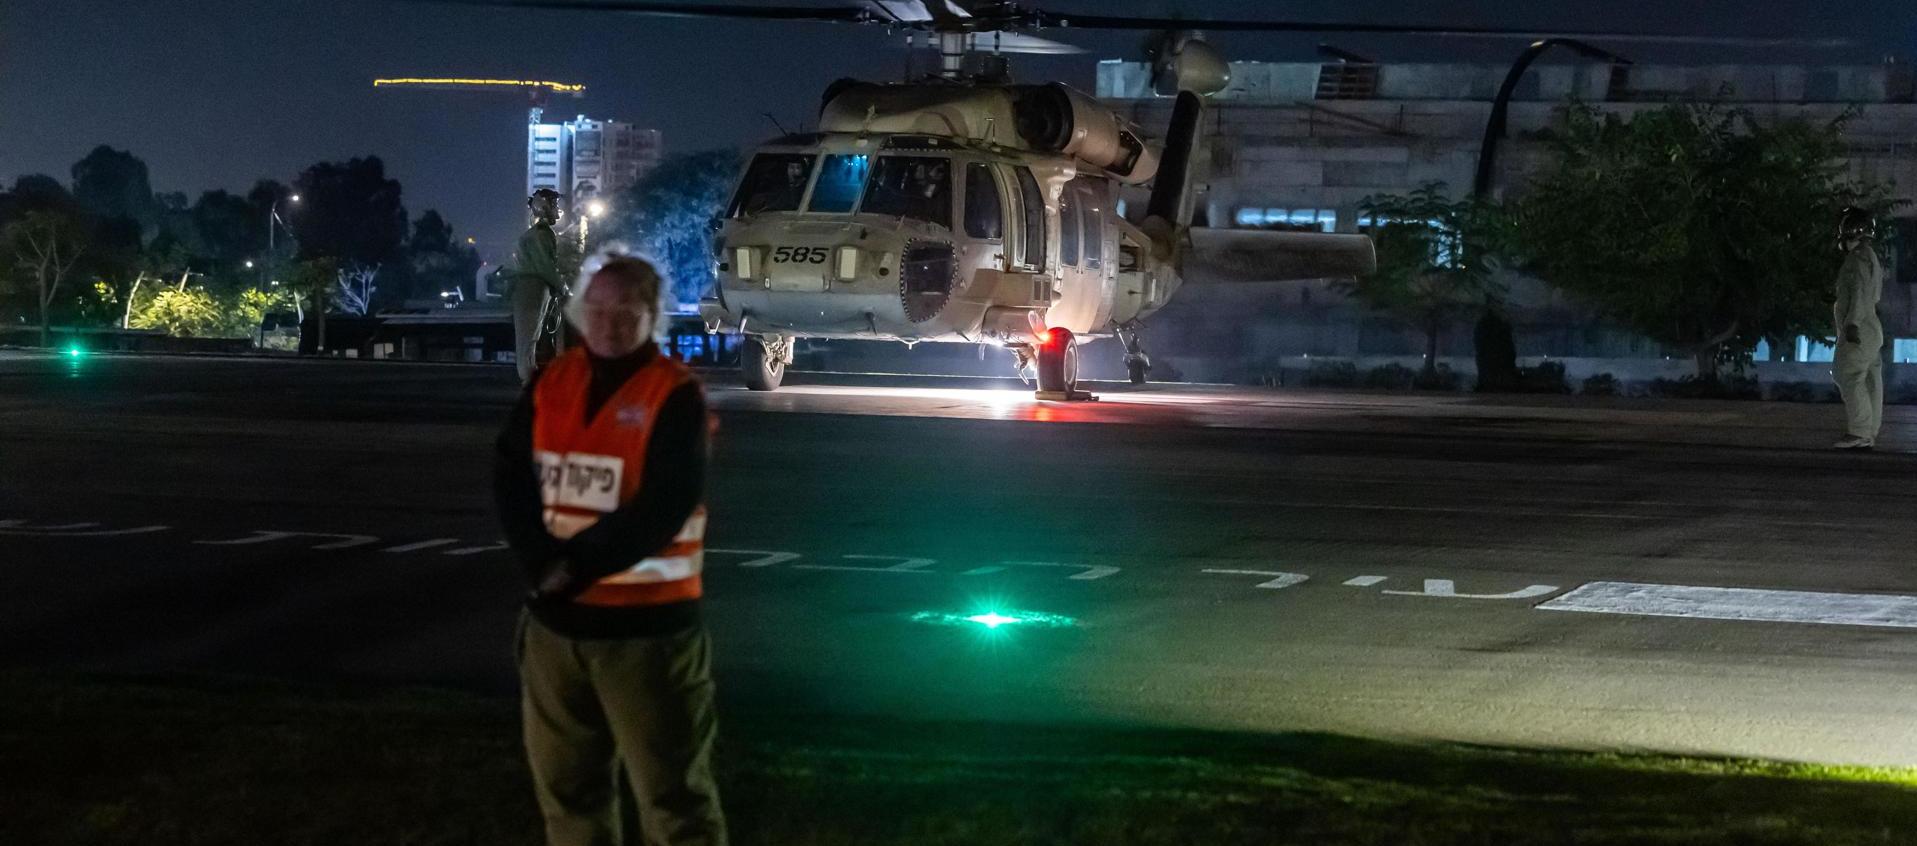  Un helicóptero del Ejército israelí que transportó a rehenes israelíes liberados por el grupo islamista Hamás.